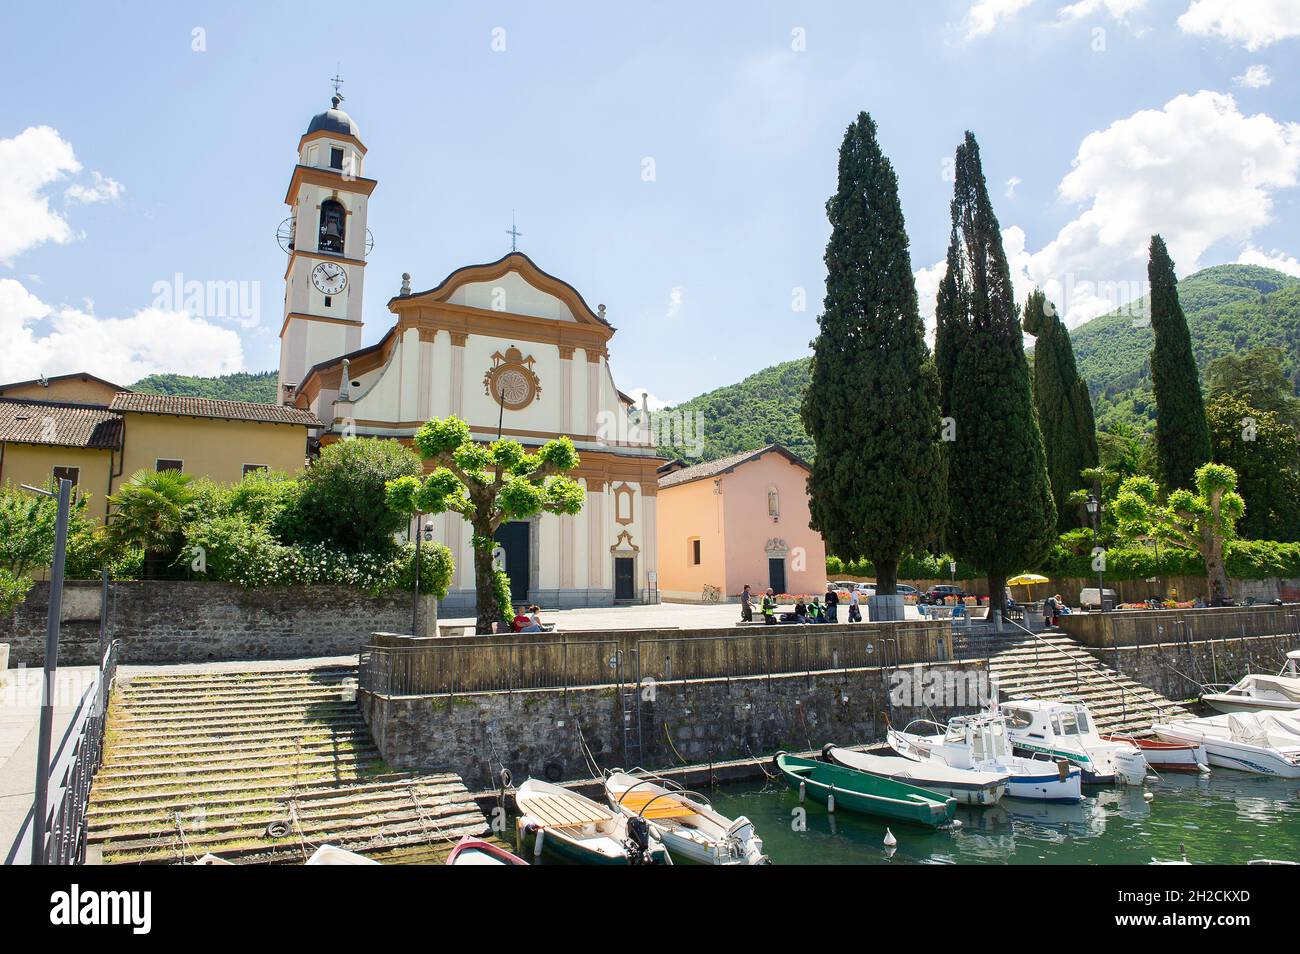 Italy, Lombardy, Como lake, Bellagio, Lario, Tourism, Church S. Giovanni Battista Stock Photo